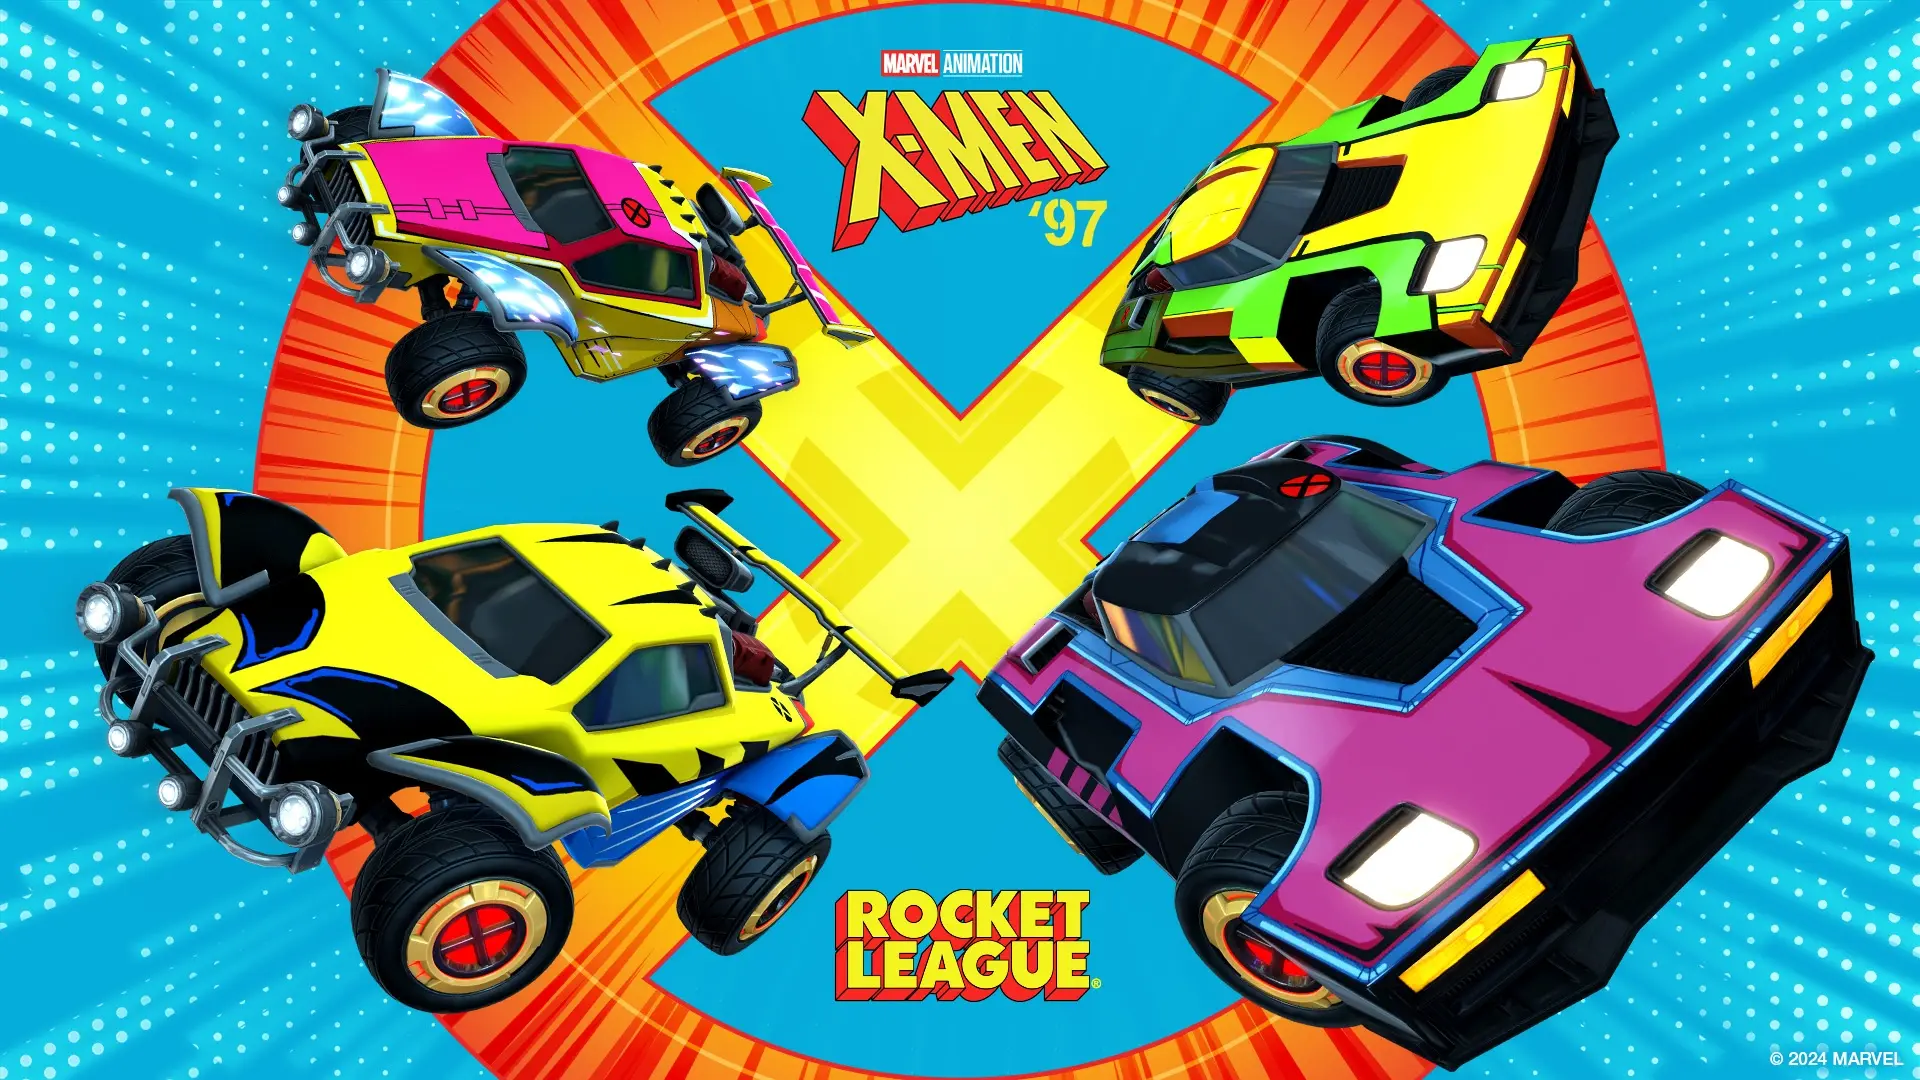 Rocket League объявляет о сотрудничестве с «Людьми Икс 97»